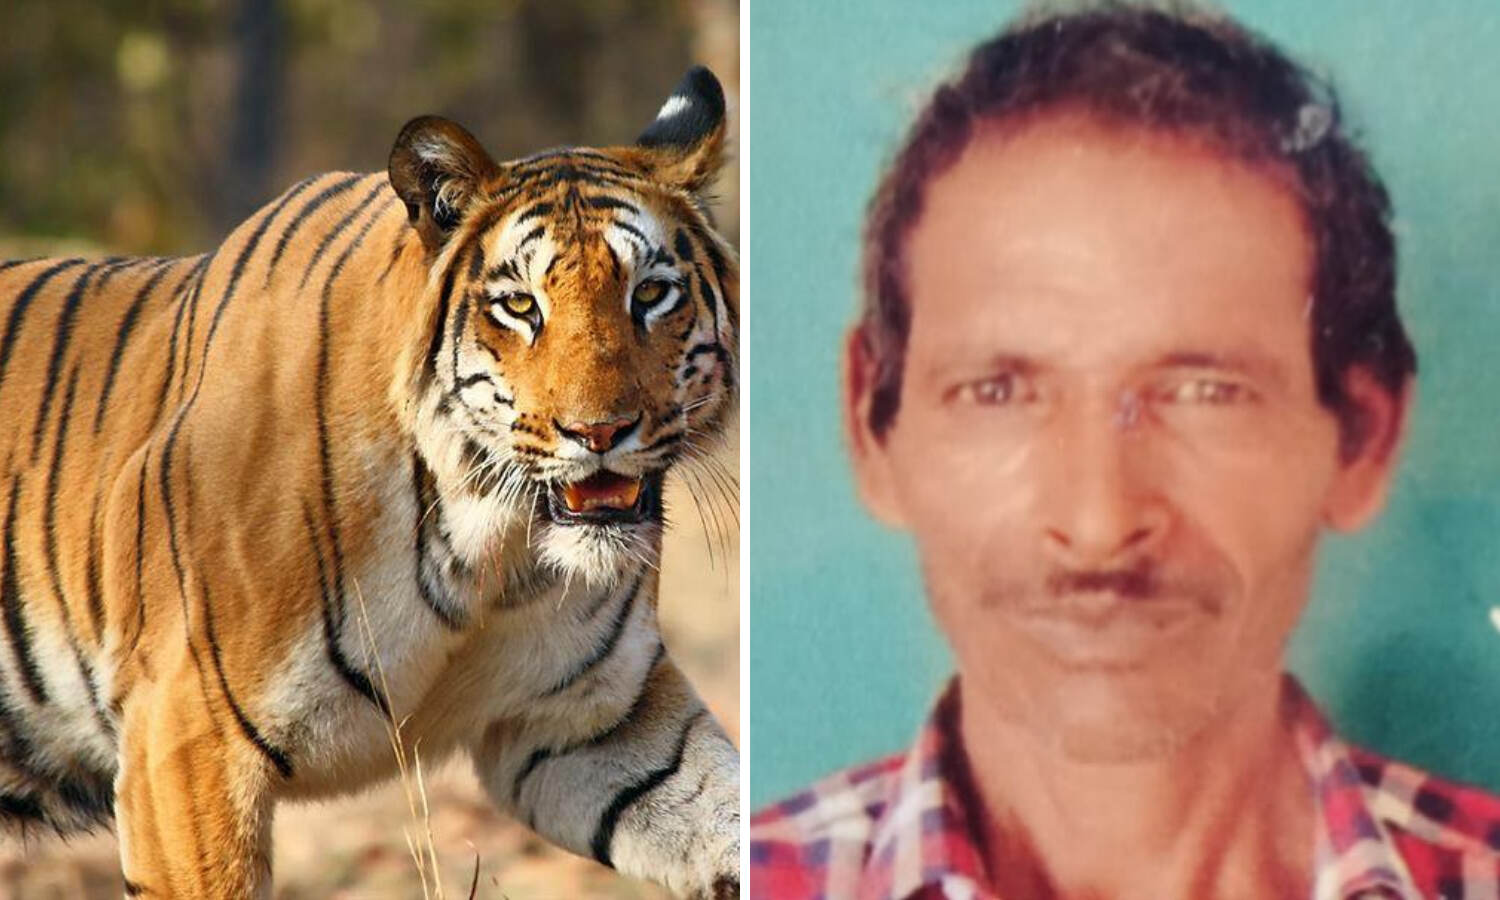 Udham Singh Nagar News : उत्तराखंड के जंगल में बाघ ने इस आदमी को बनाया शिकार,क्षत विक्षत शव बरामद - दहशत में लोग